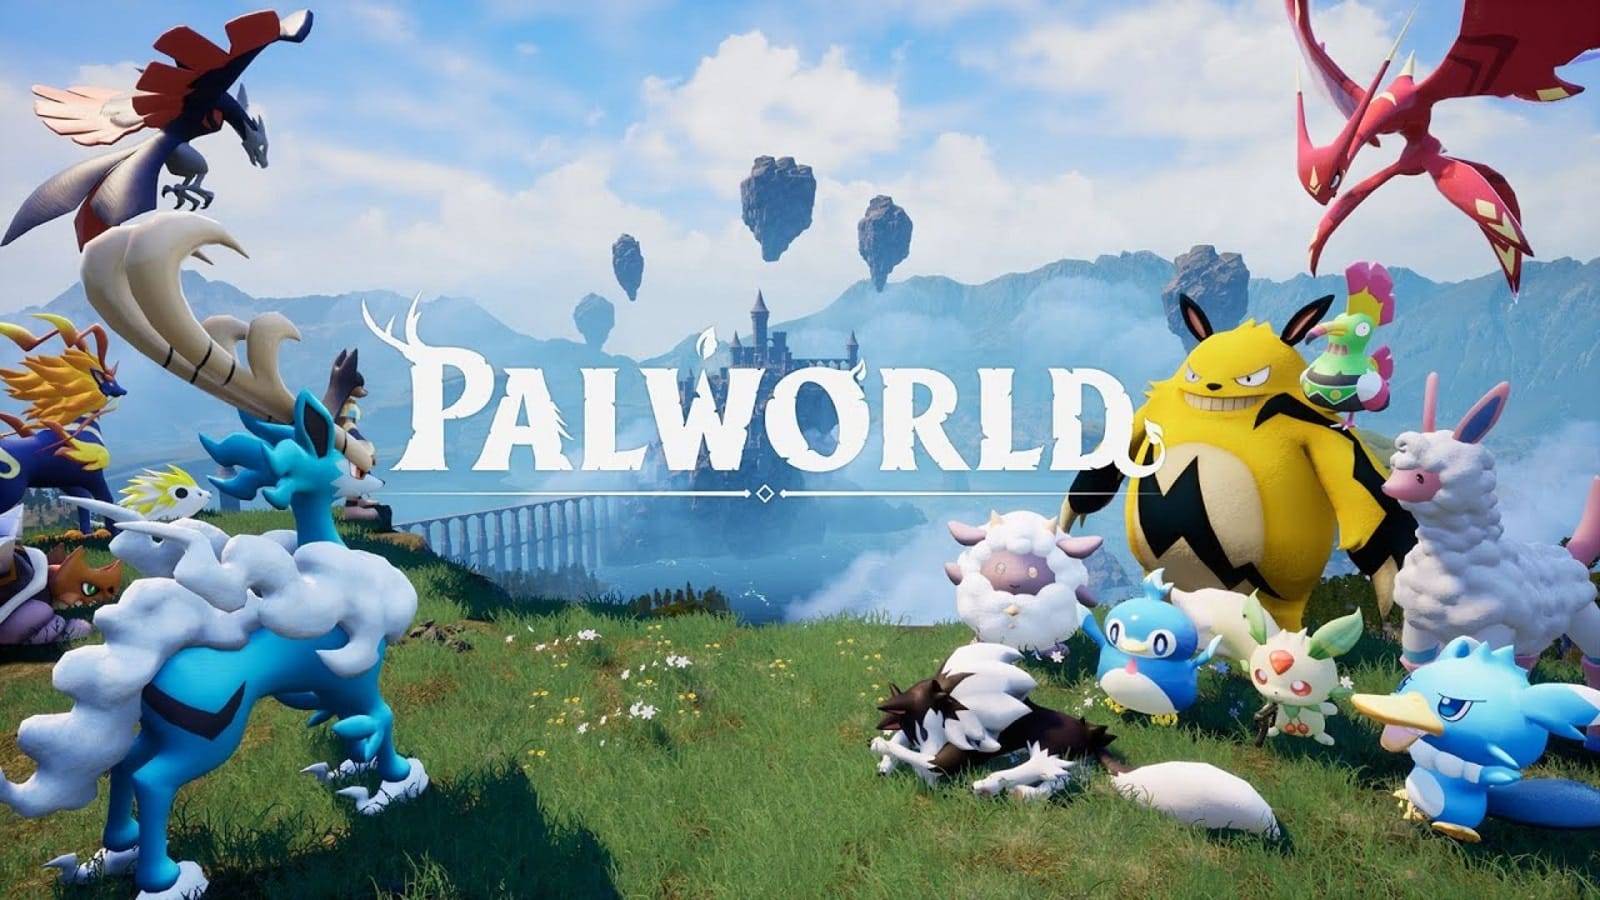 Palworld изучаем мир дальше